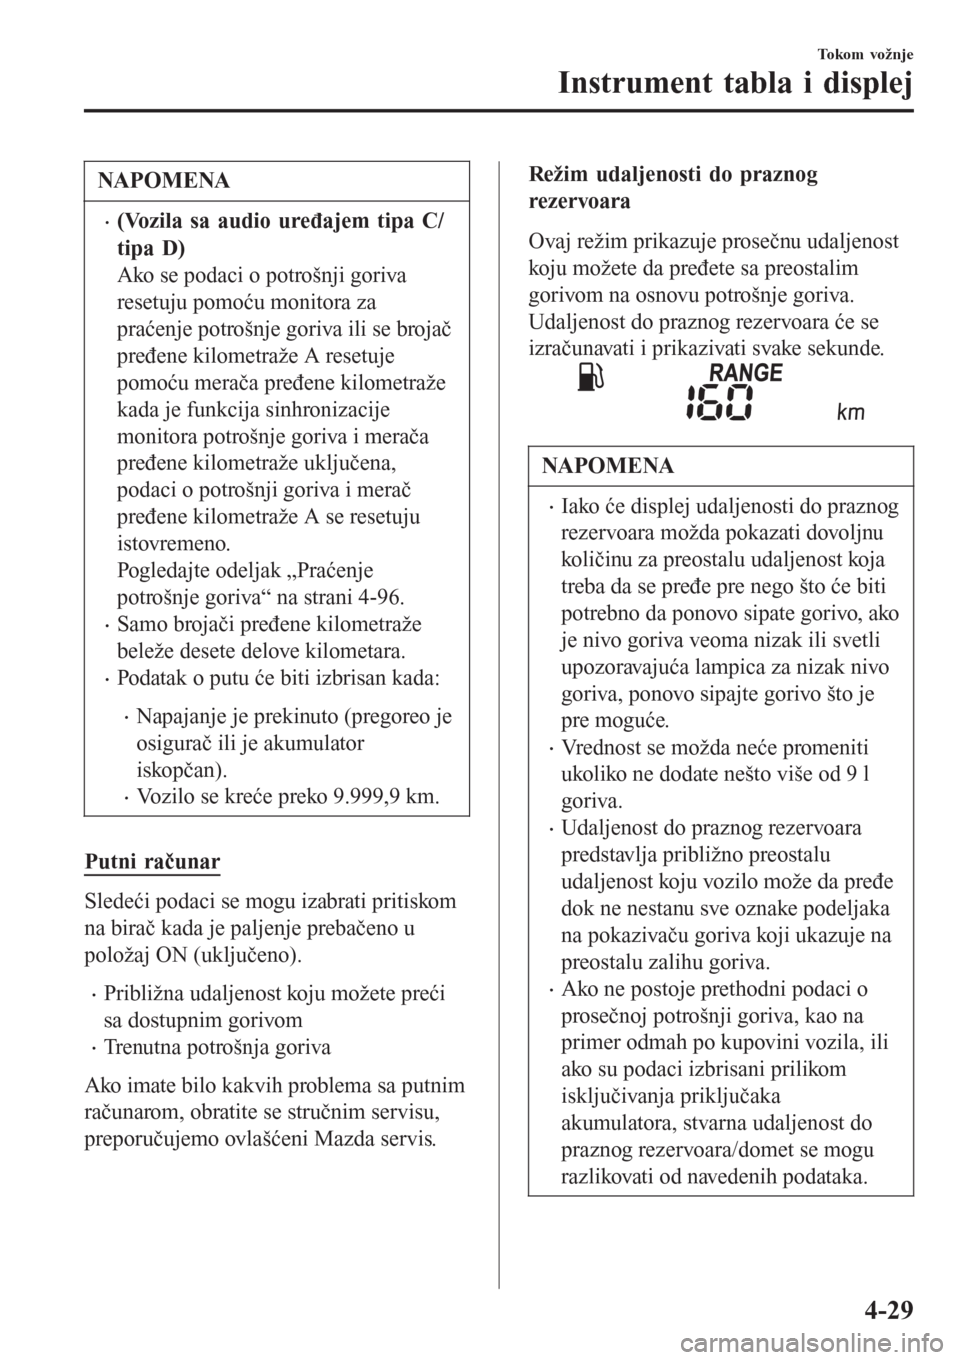 MAZDA MODEL CX-3 2016  Korisničko uputstvo (in Serbian) NAPOMENA
•(Vozila sa audio uređajem tipa C/
tipa D)
Ako se podaci o potrošnji goriva
resetuju pomoću monitora za
praćenje potrošnje goriva ili se brojač
pređene kilometraže A resetuje
pomoć